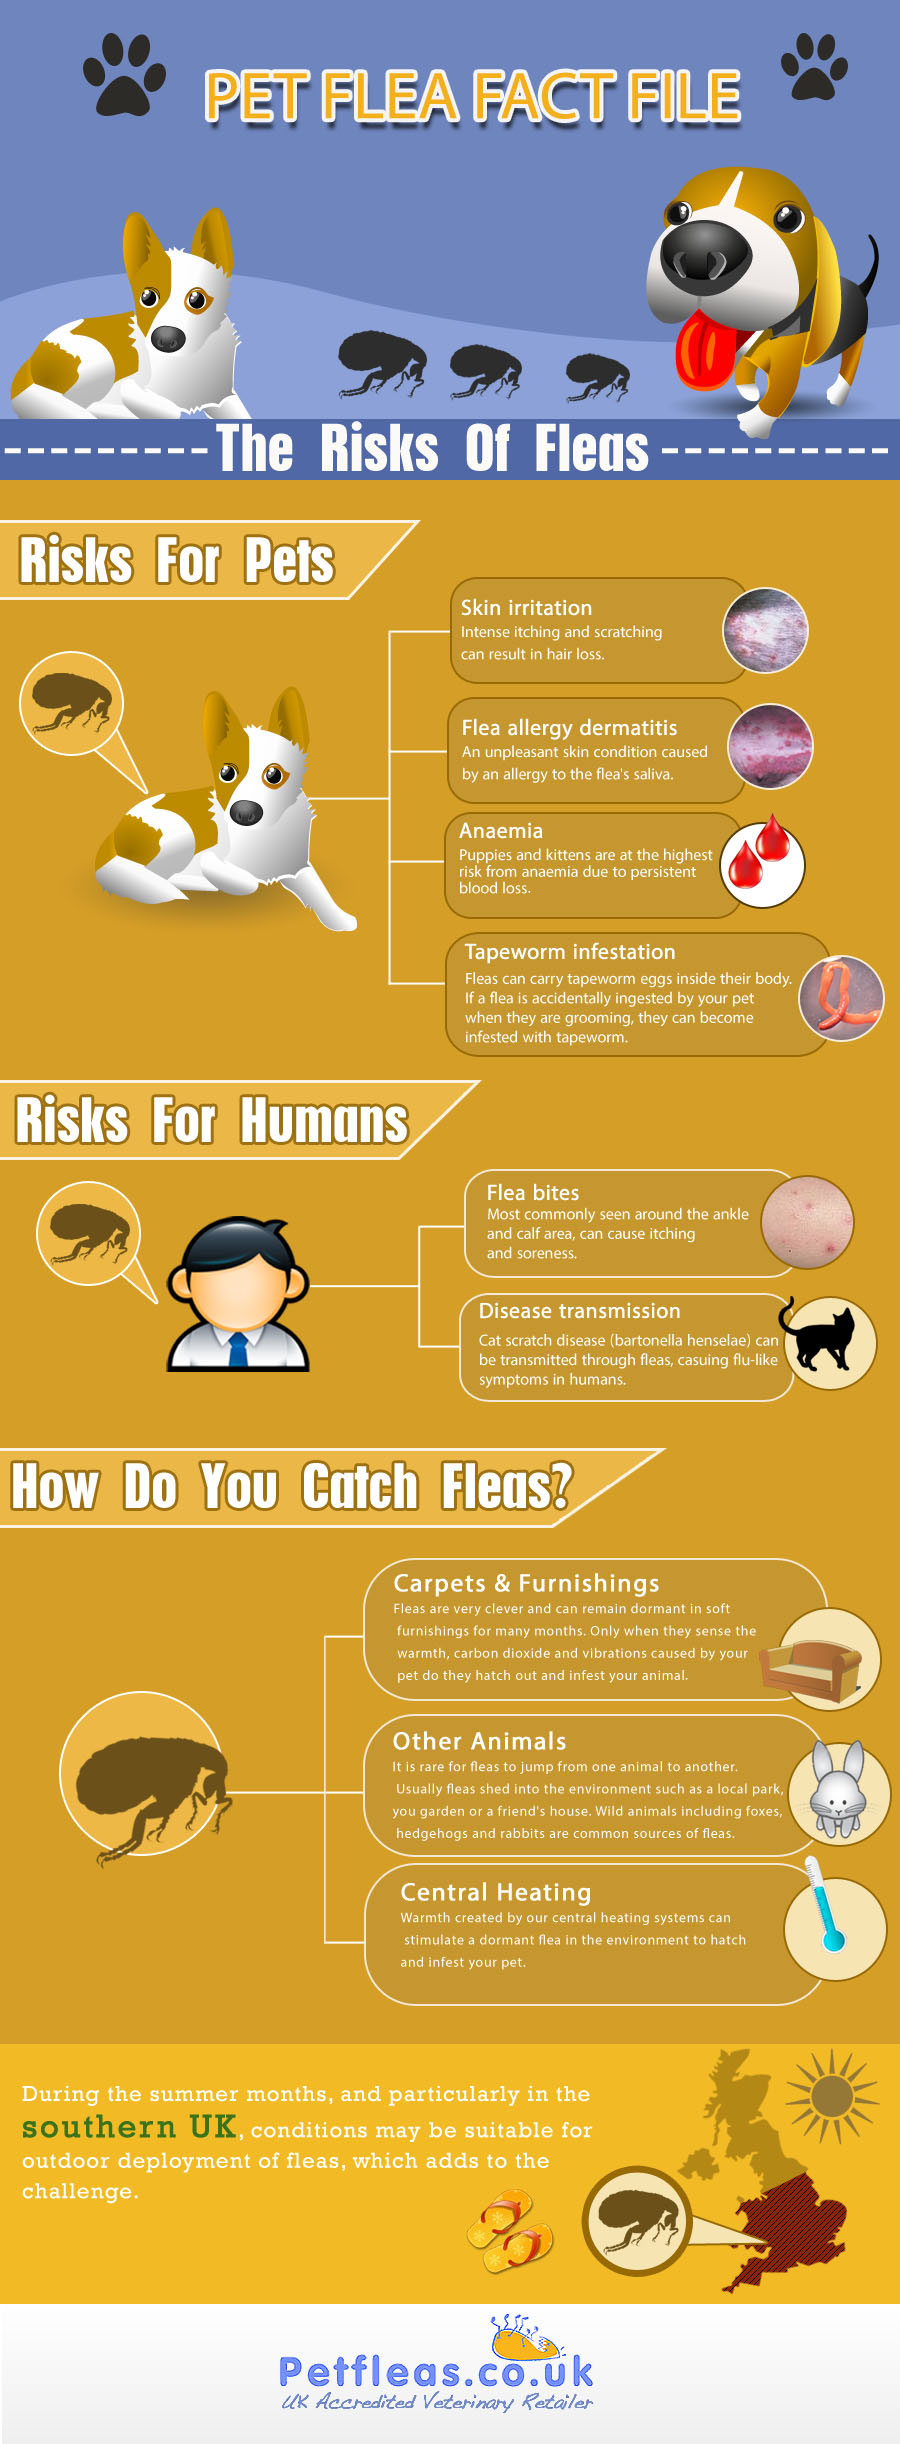 Pet Flea Fact File - The Risks of Fleas